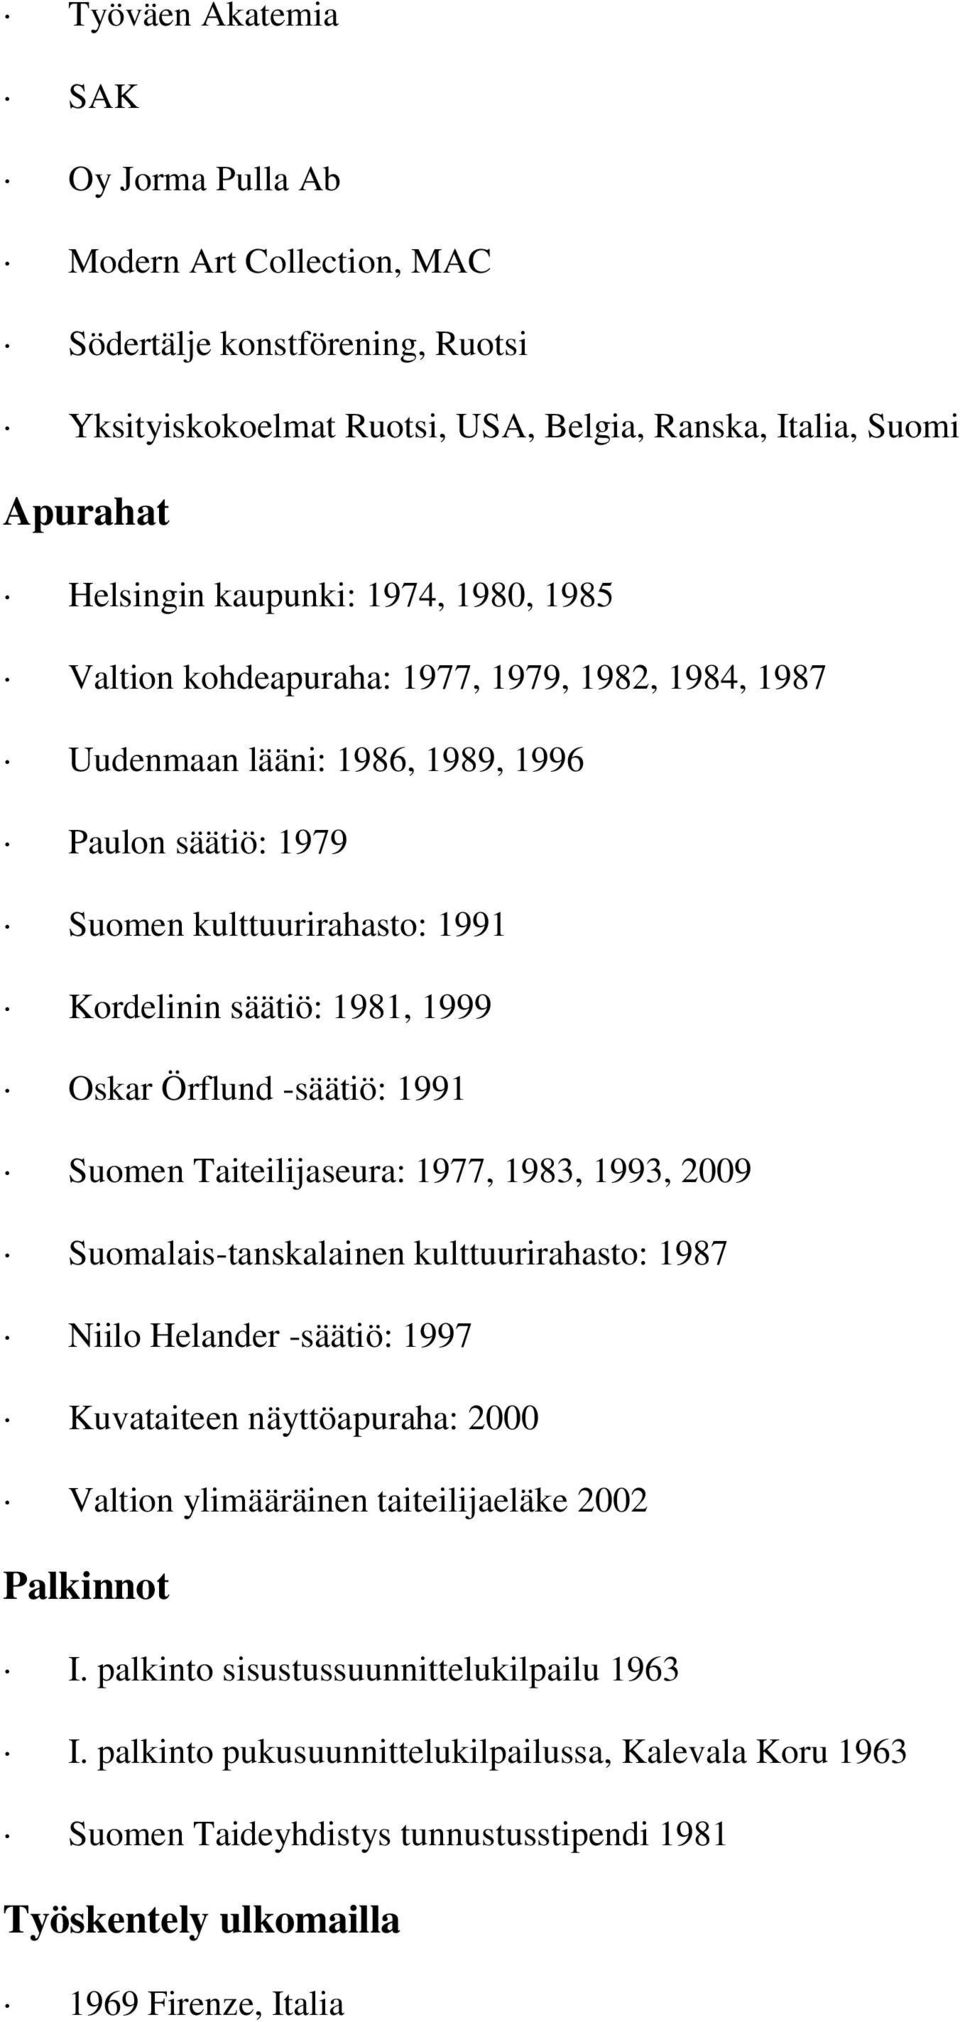 1991 Suomen Taiteilijaseura: 1977, 1983, 1993, 2009 Suomalais-tanskalainen kulttuurirahasto: 1987 Niilo Helander -säätiö: 1997 Kuvataiteen näyttöapuraha: 2000 Valtion ylimääräinen taiteilijaeläke